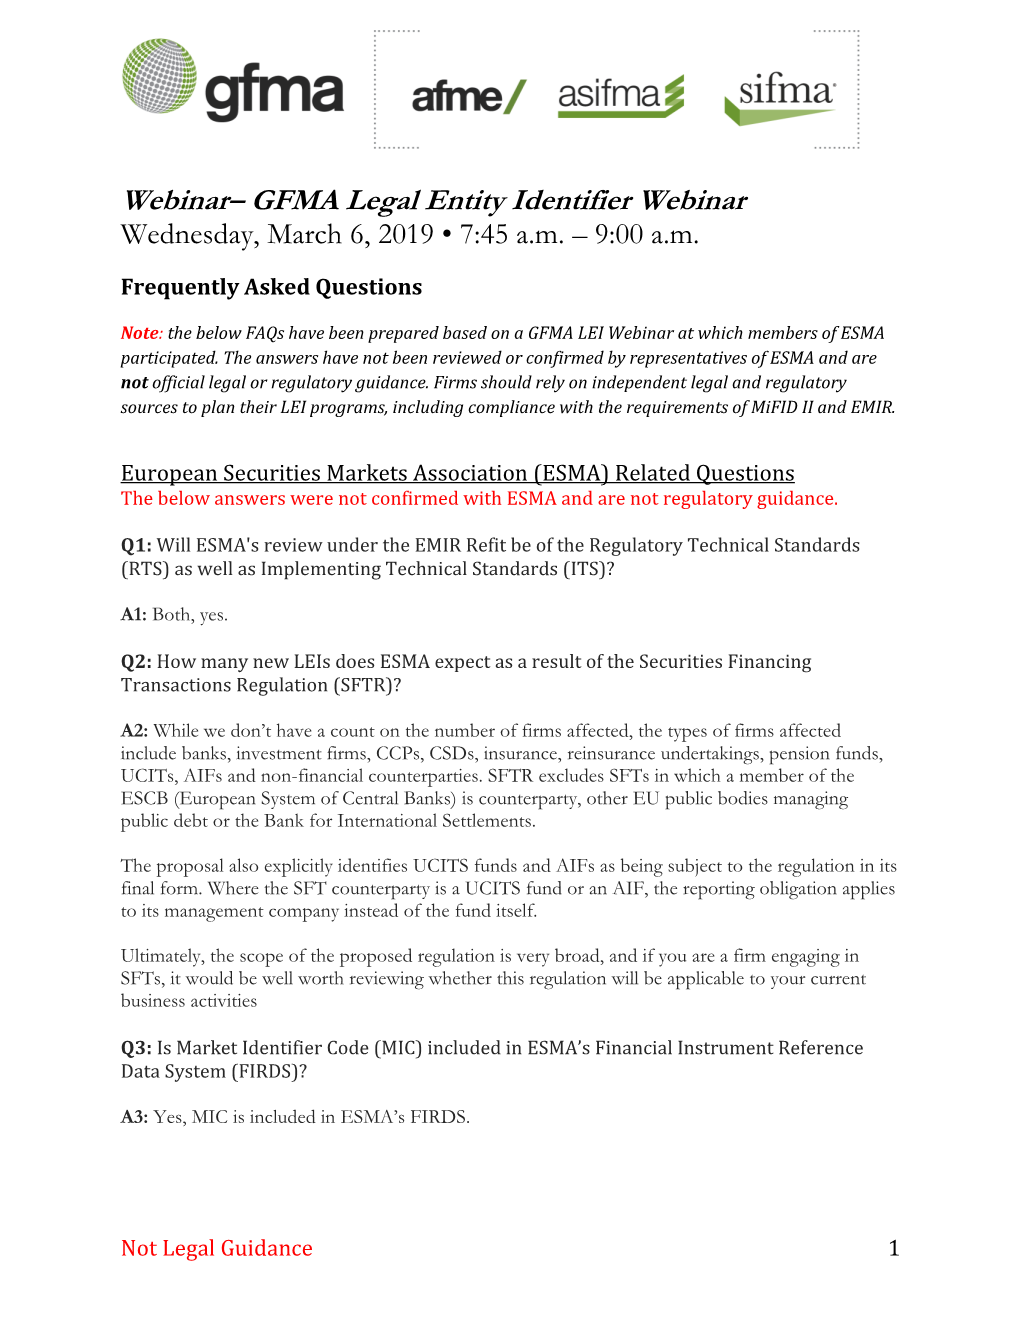 GFMA Legal Entity Identifier Webinar Wednesday, March 6, 2019 • 7:45 A.M